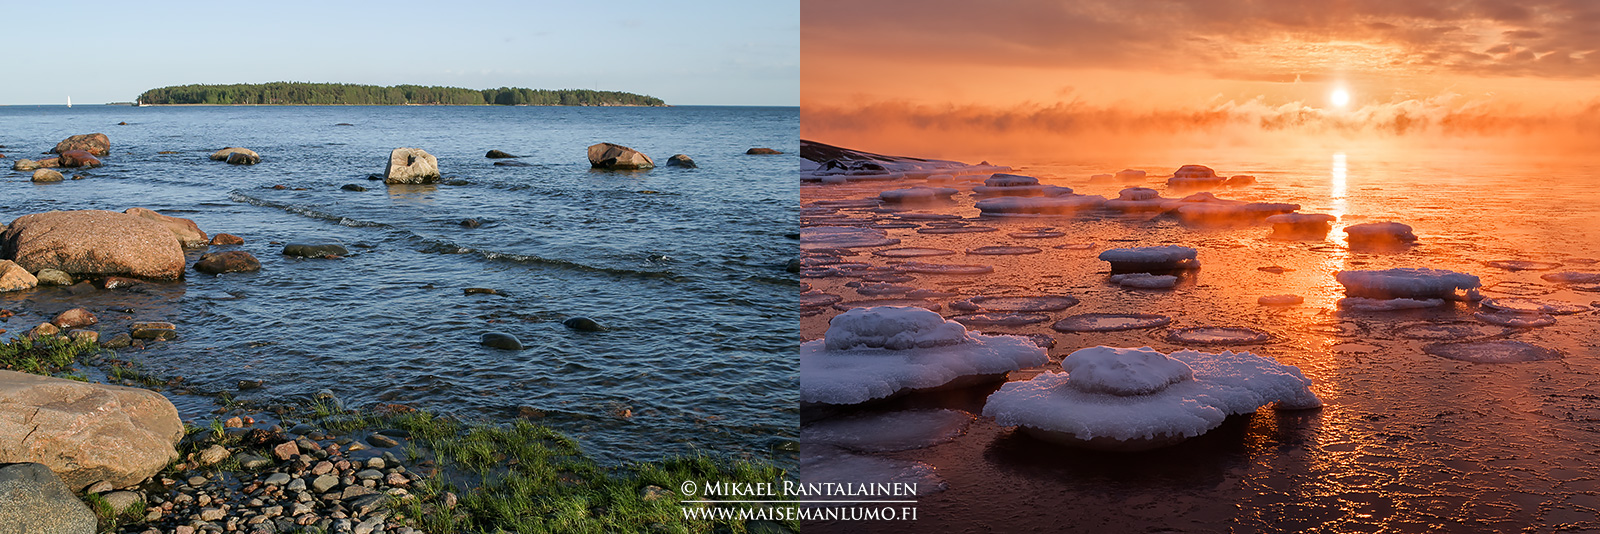 Kesäinen vs. talvinen maisema Lauttasaaressa